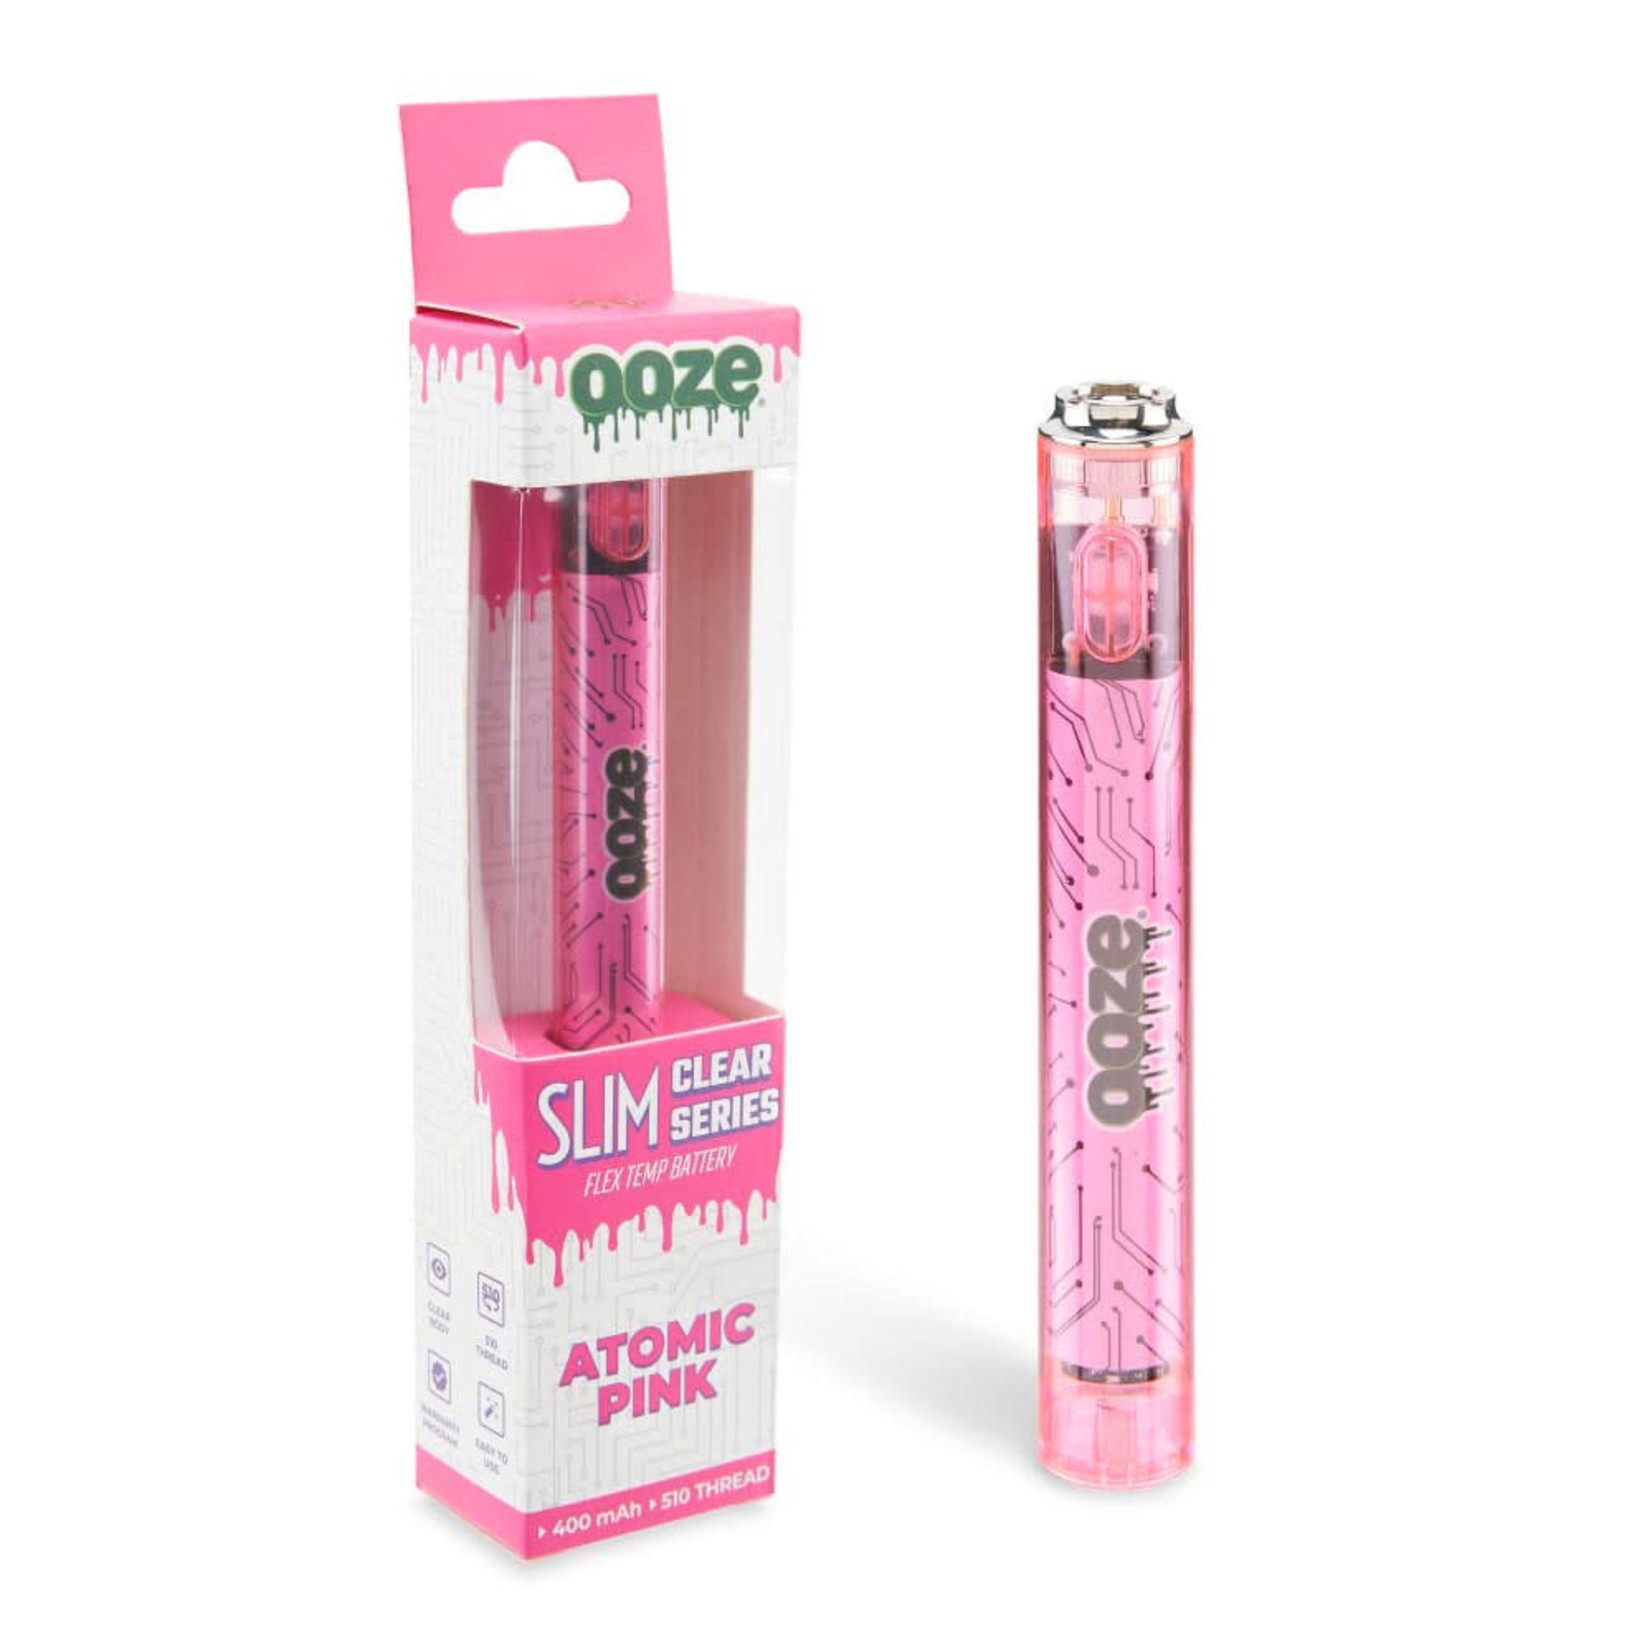 Ooze Ooze Slim Clear Series Cartridge Battery